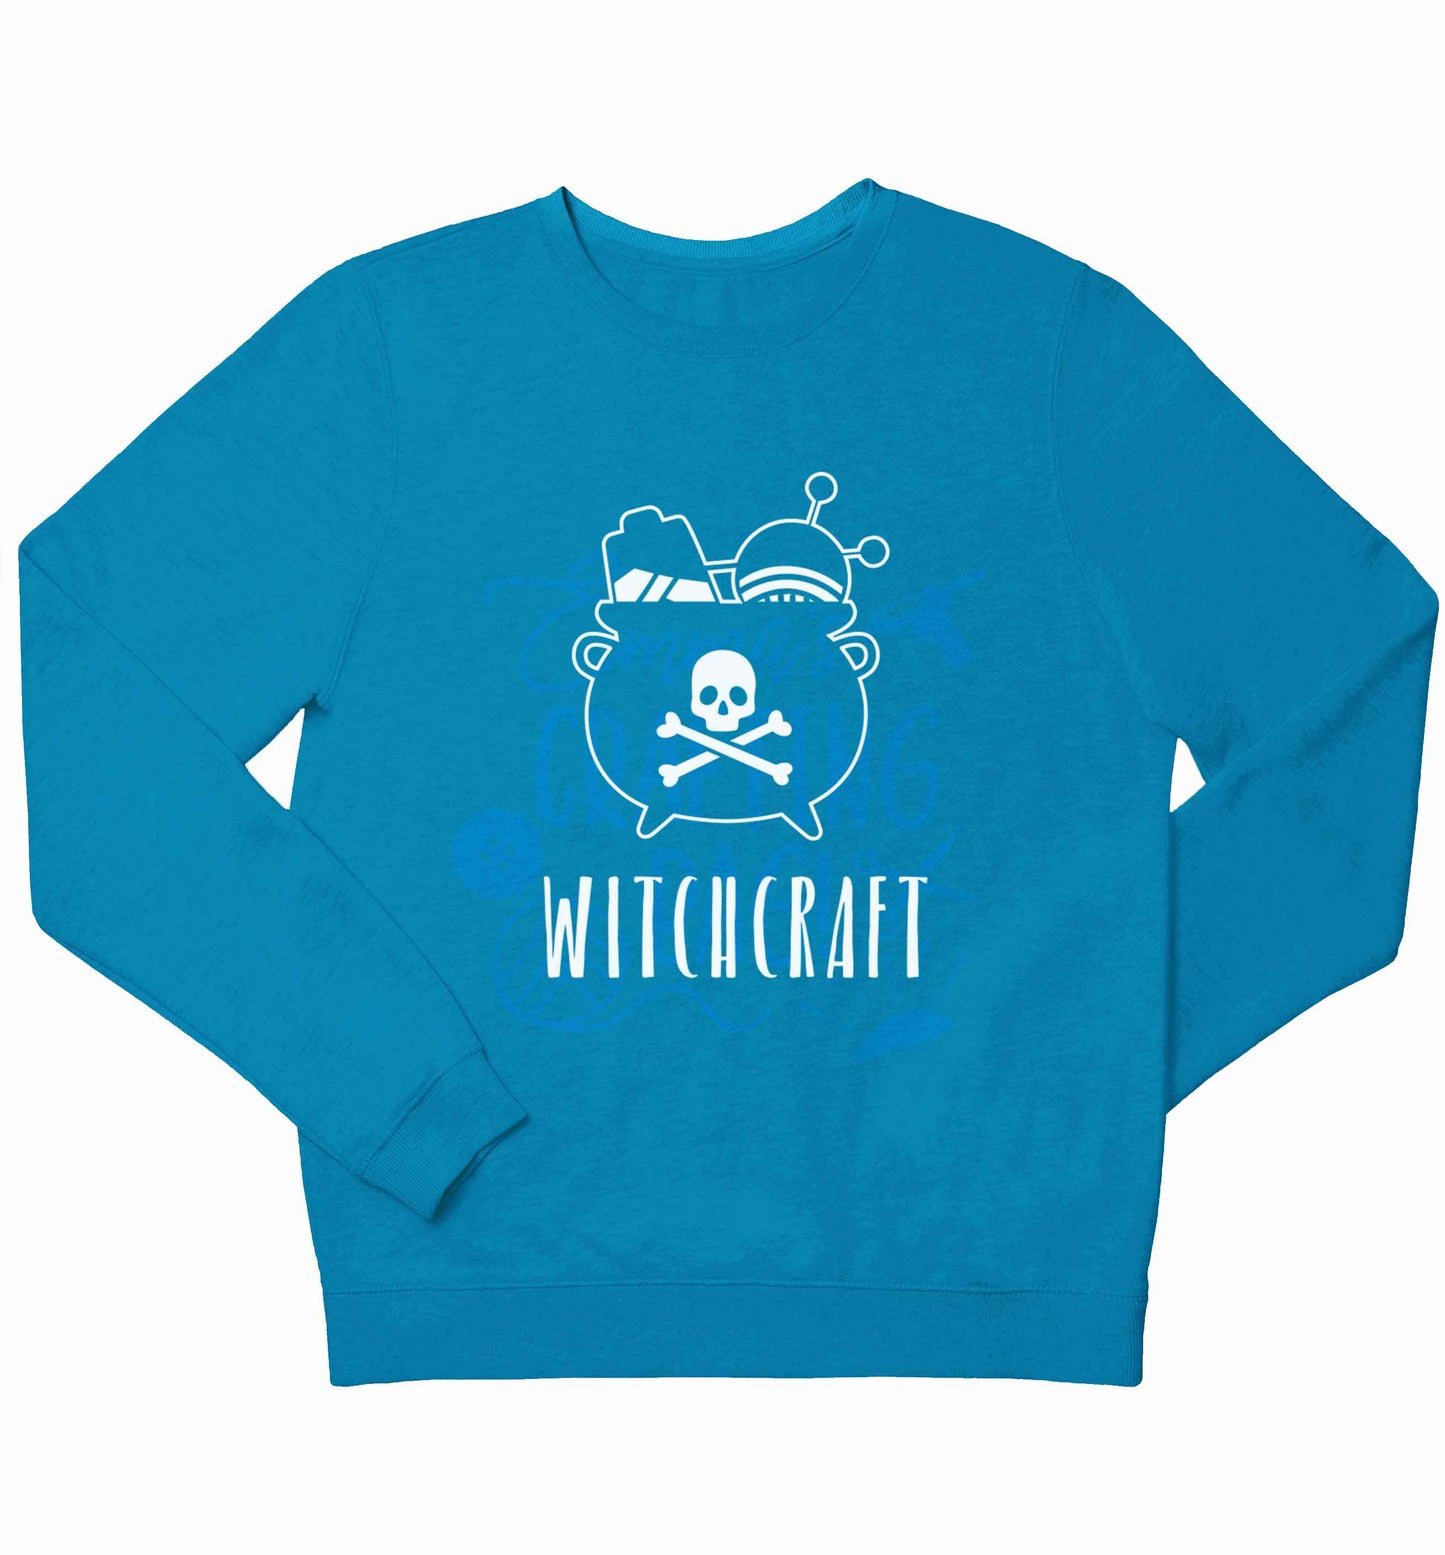 Witchcraft children's blue sweater 12-13 Years